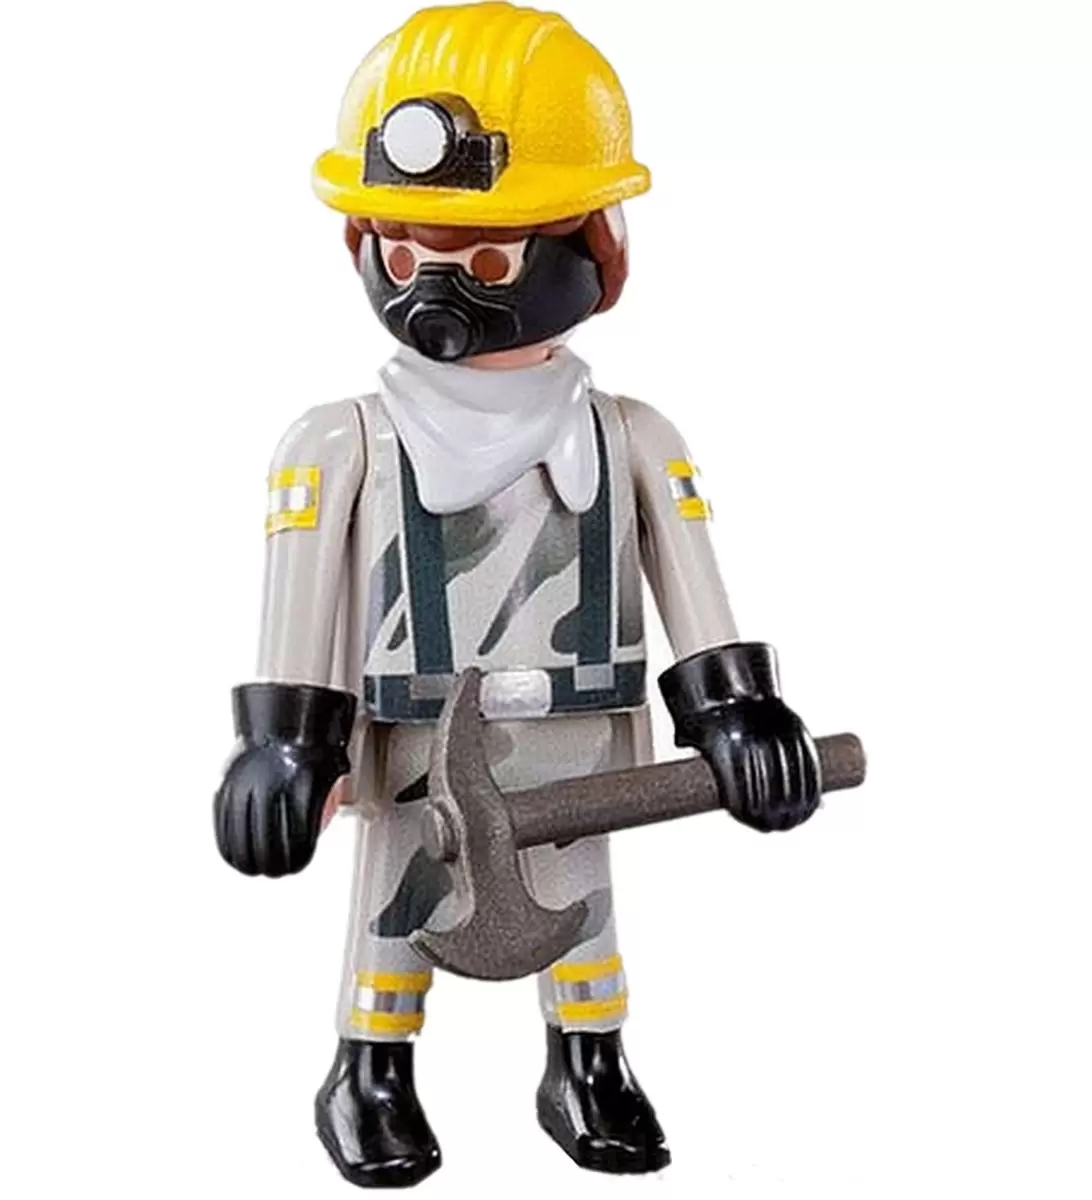 Soepel Winst Volg ons The miner - Playmobil Figures Series 12 9241